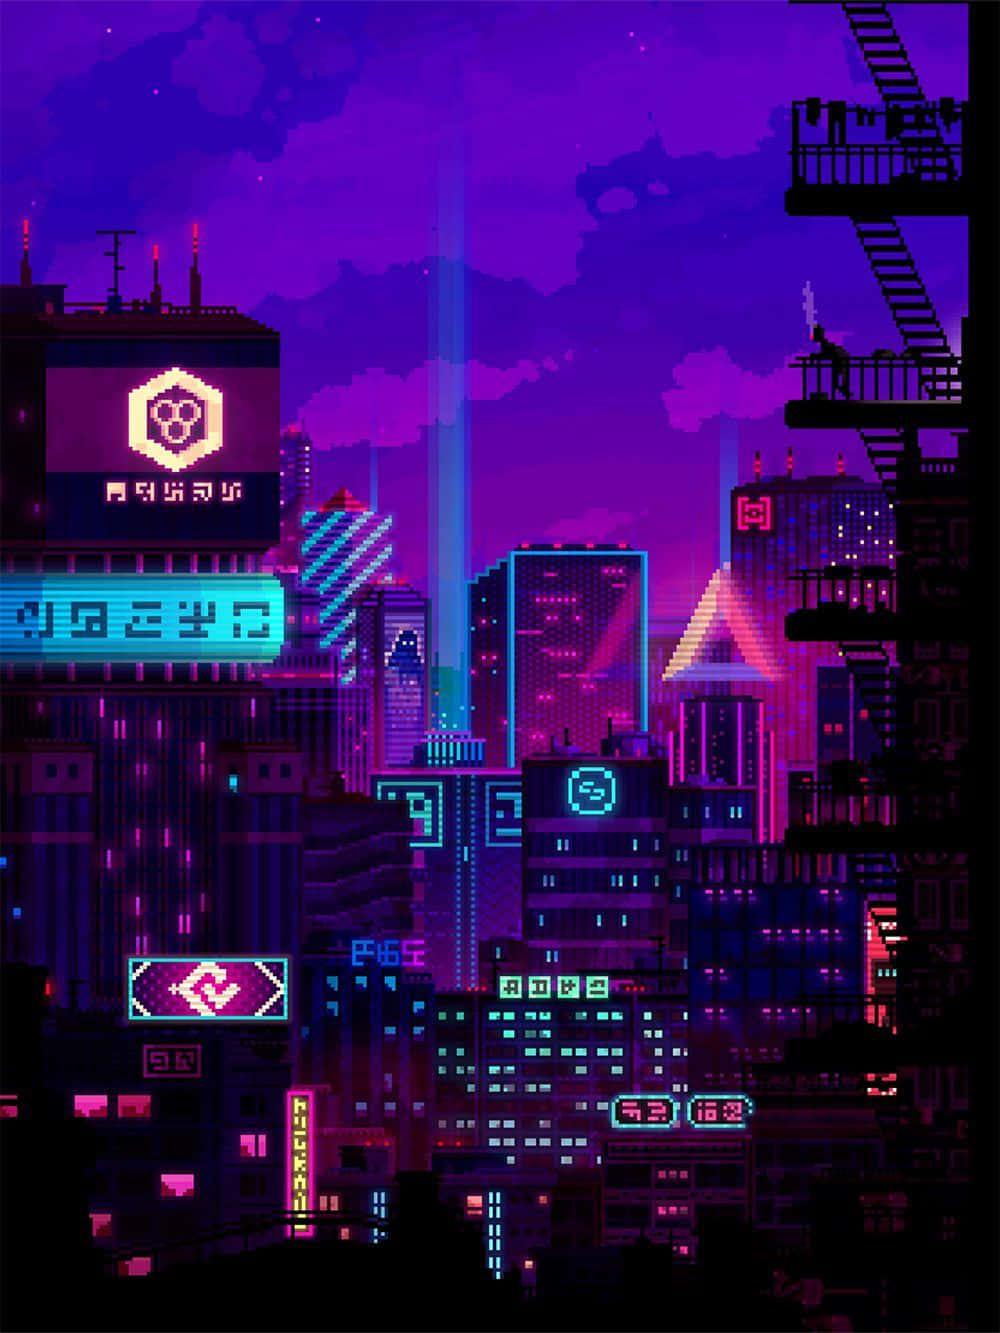 Cielospúrpura De La Ciudad Cyberpunk En Arte Pixelado. Fondo de pantalla